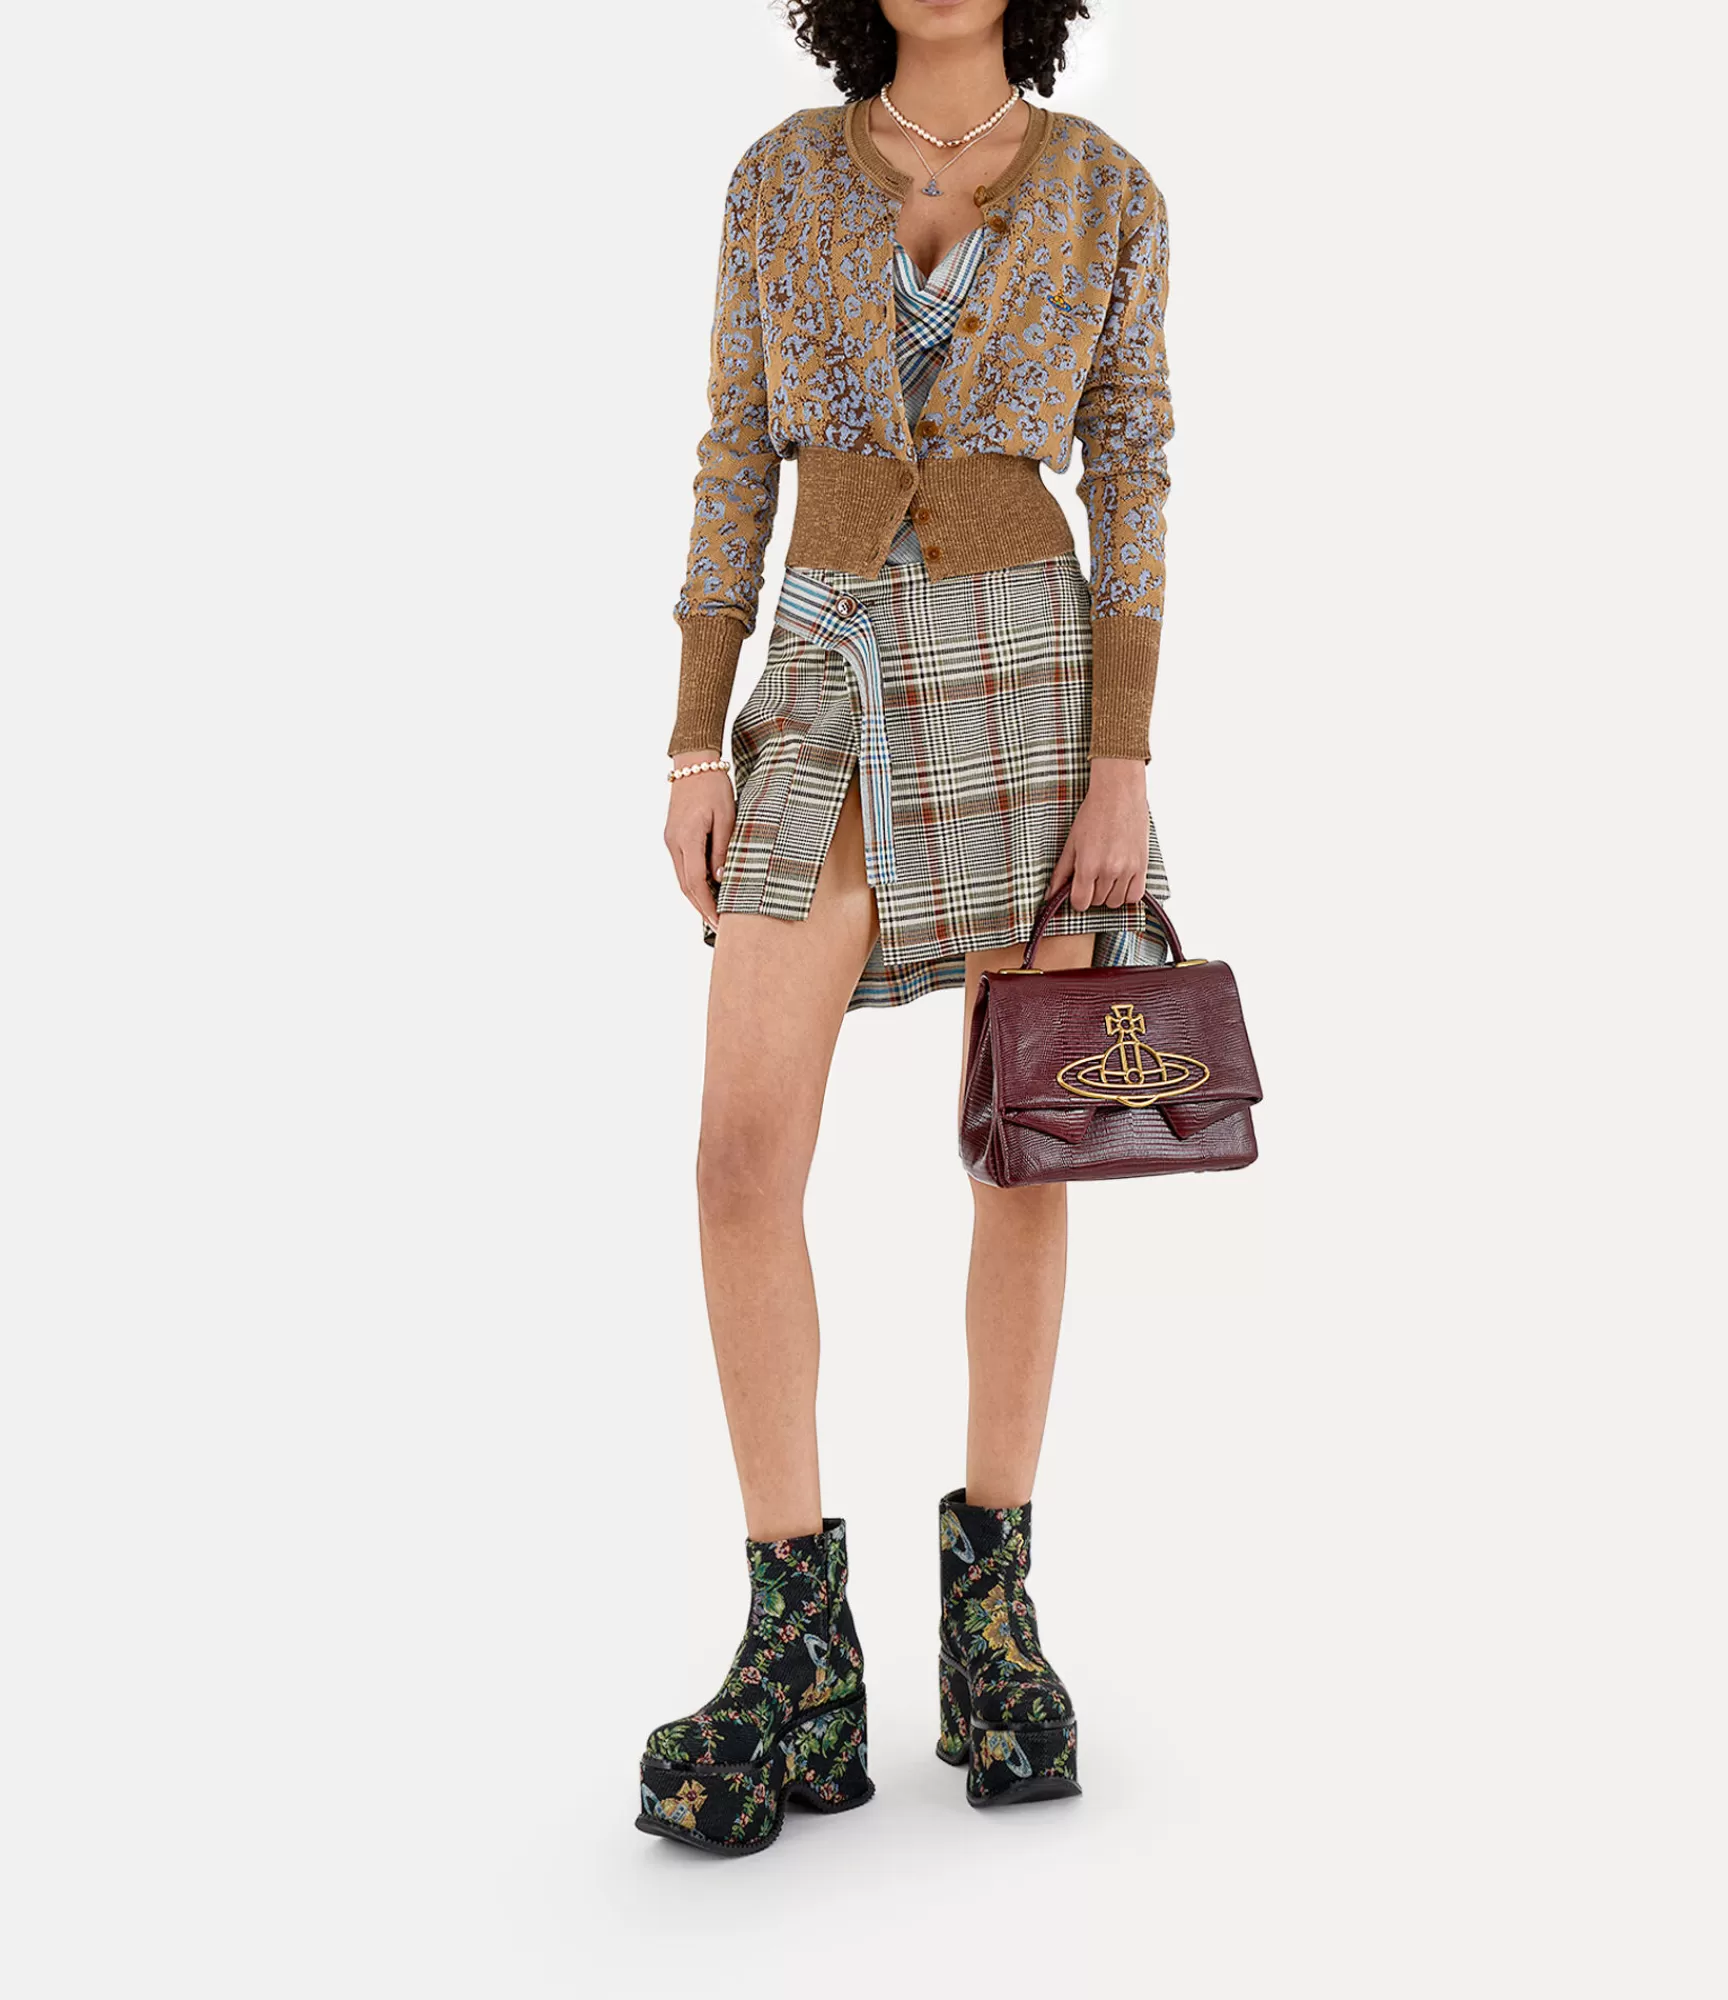 Vivienne Westwood Knitwear*LEO CARDI Leopard